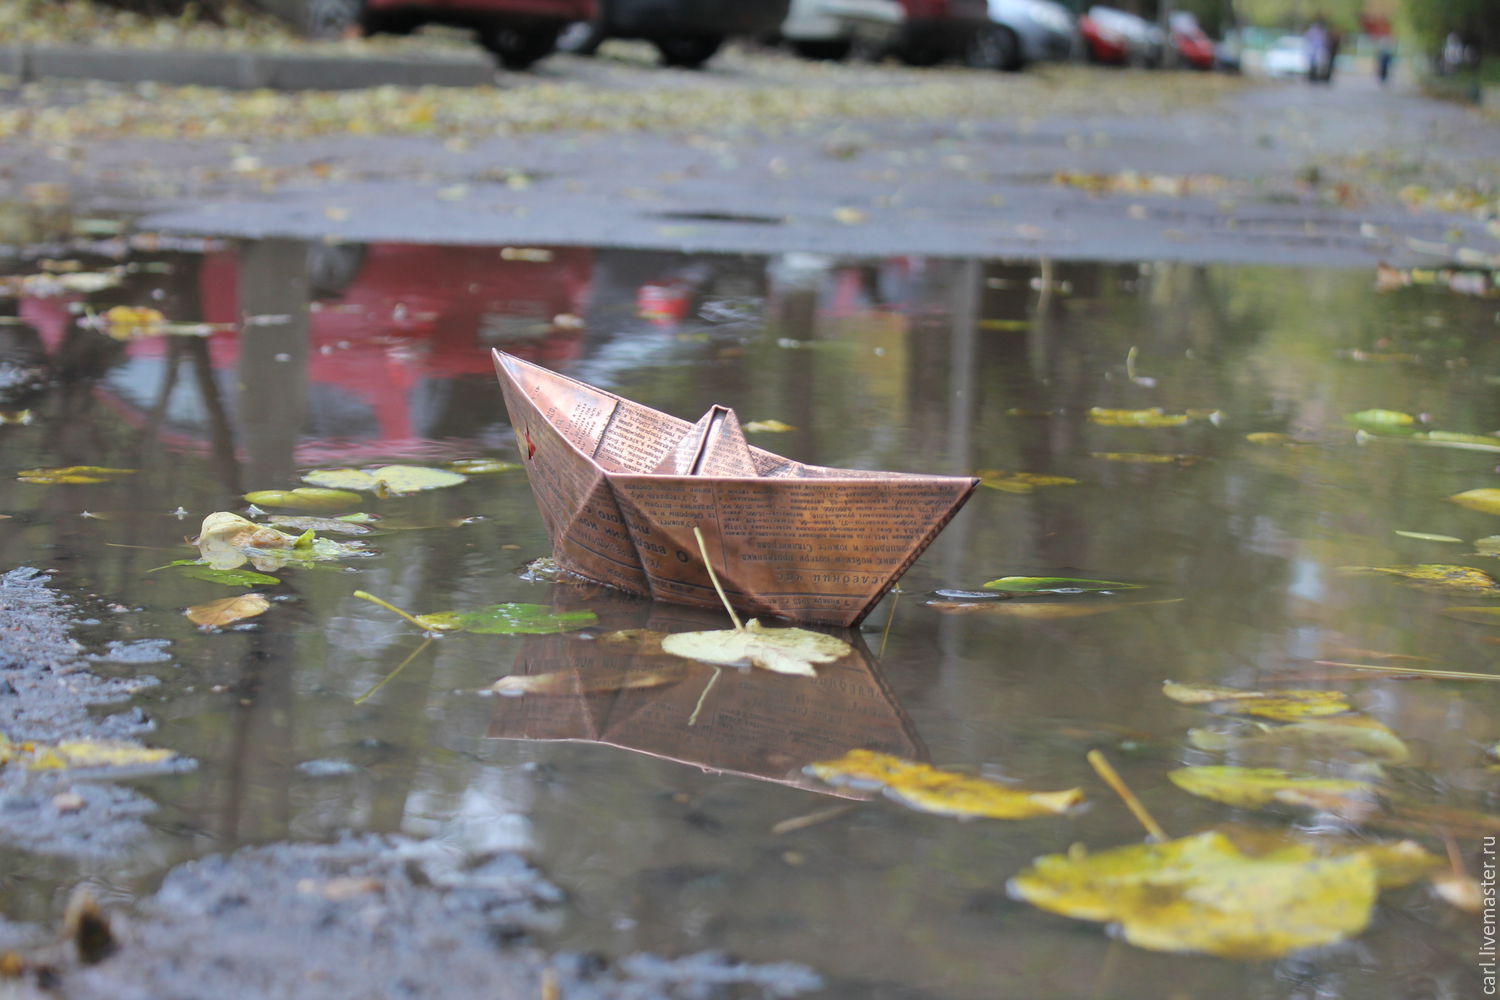 Кораблик из бумаги я по ручью пустил. Бумажный кораблик. Кораблик на воде. Кораблик в луже.